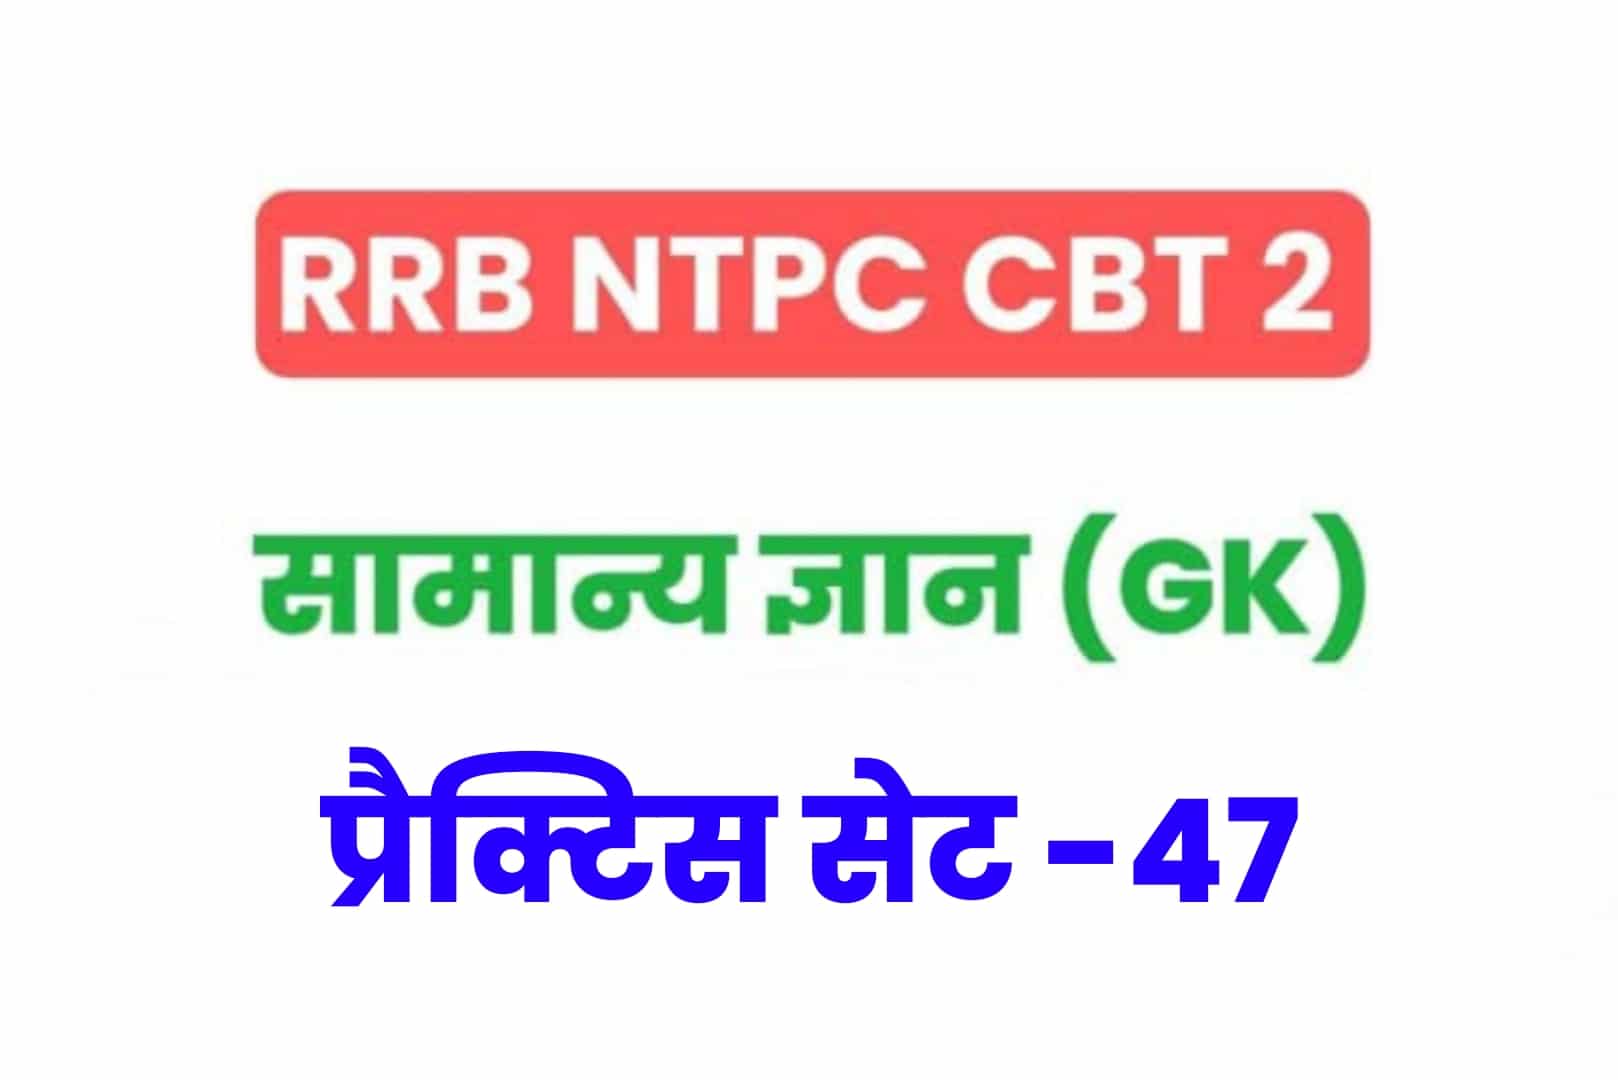 RRB NTPC CBT 2 GK प्रैक्टिस सेट 47: परीक्षा में जाने से पहले अवश्य पढ़ें सामान्य ज्ञान के 25 मुख्य MCQ